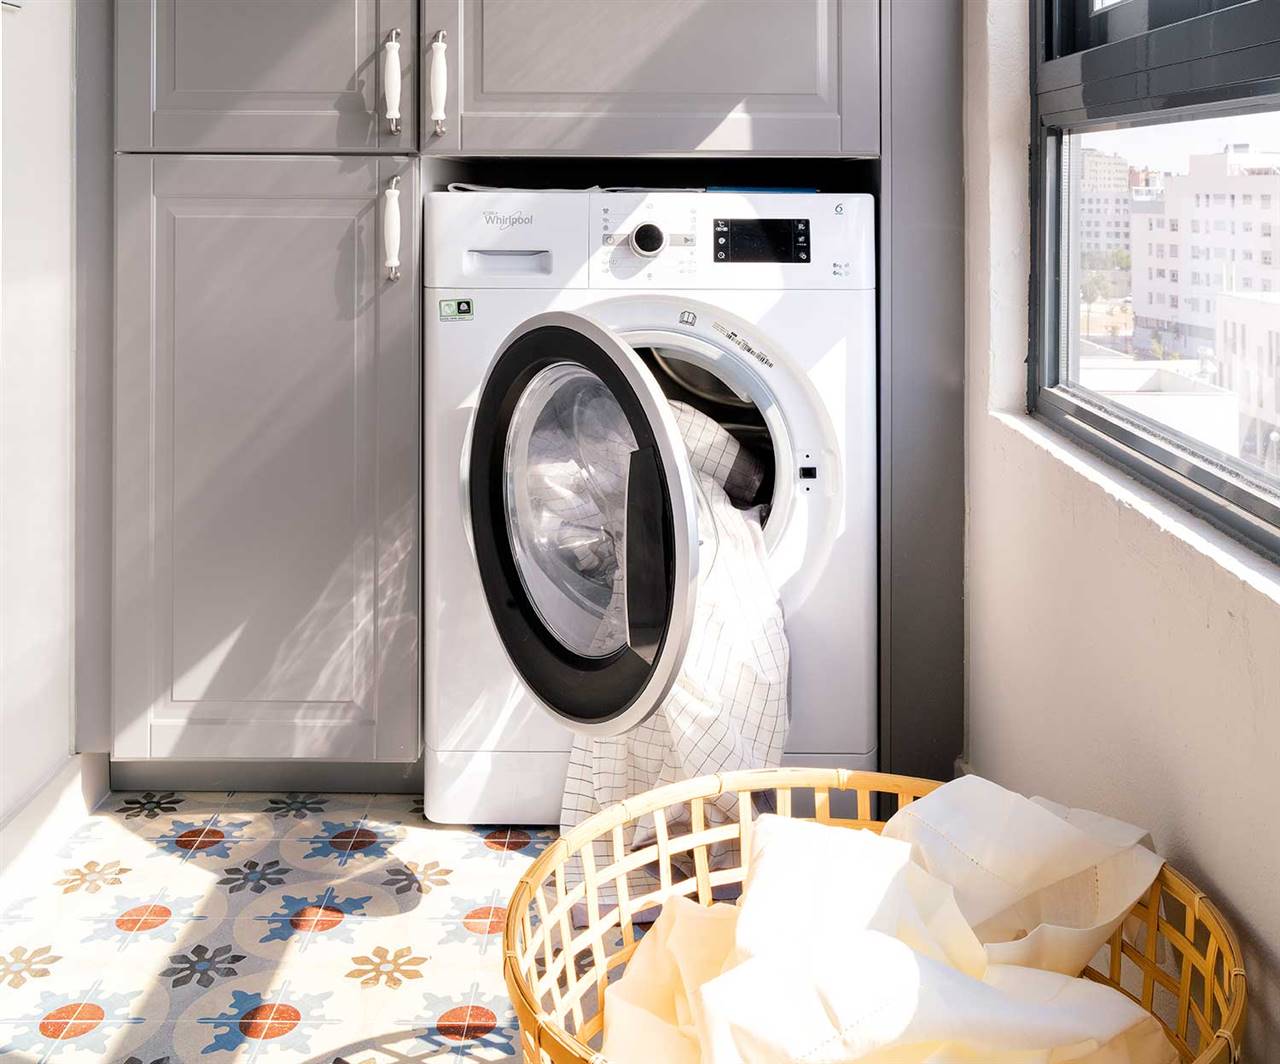 Sumergido Posible Otros lugares De verdad hay que lavar la ropa a sesenta grados? Un experto responde